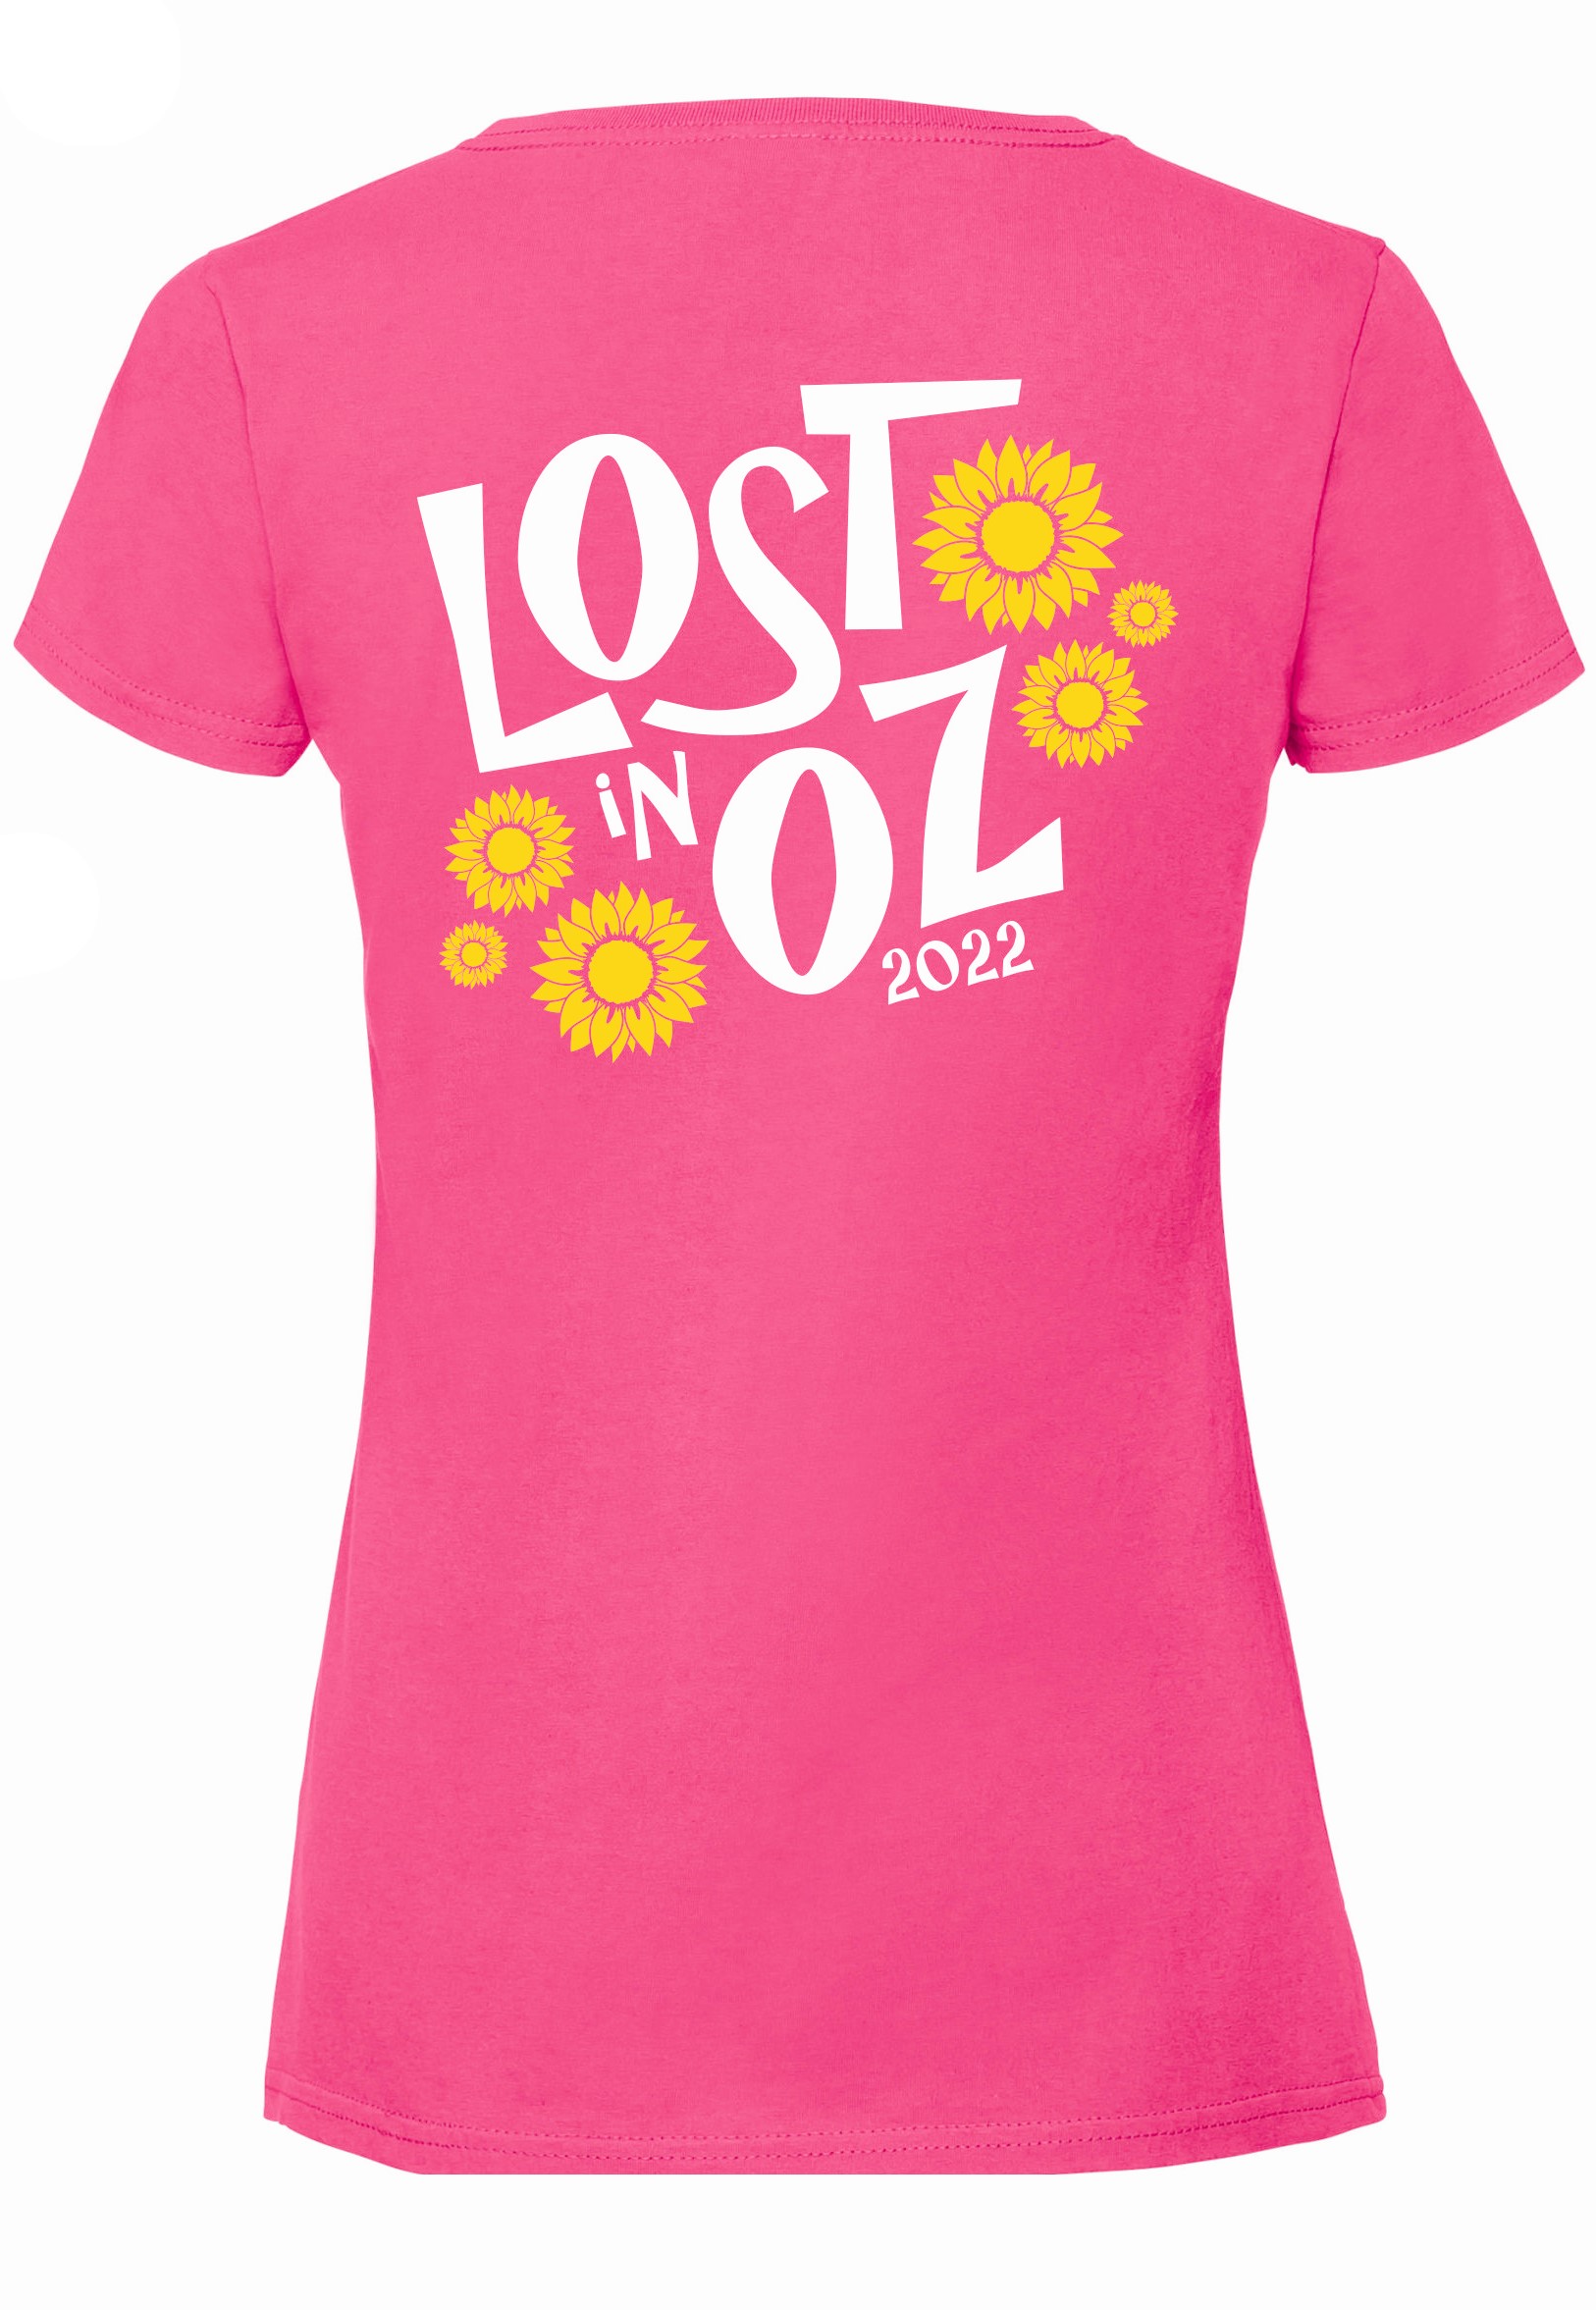 Children’s Lost in Oz T-shirt